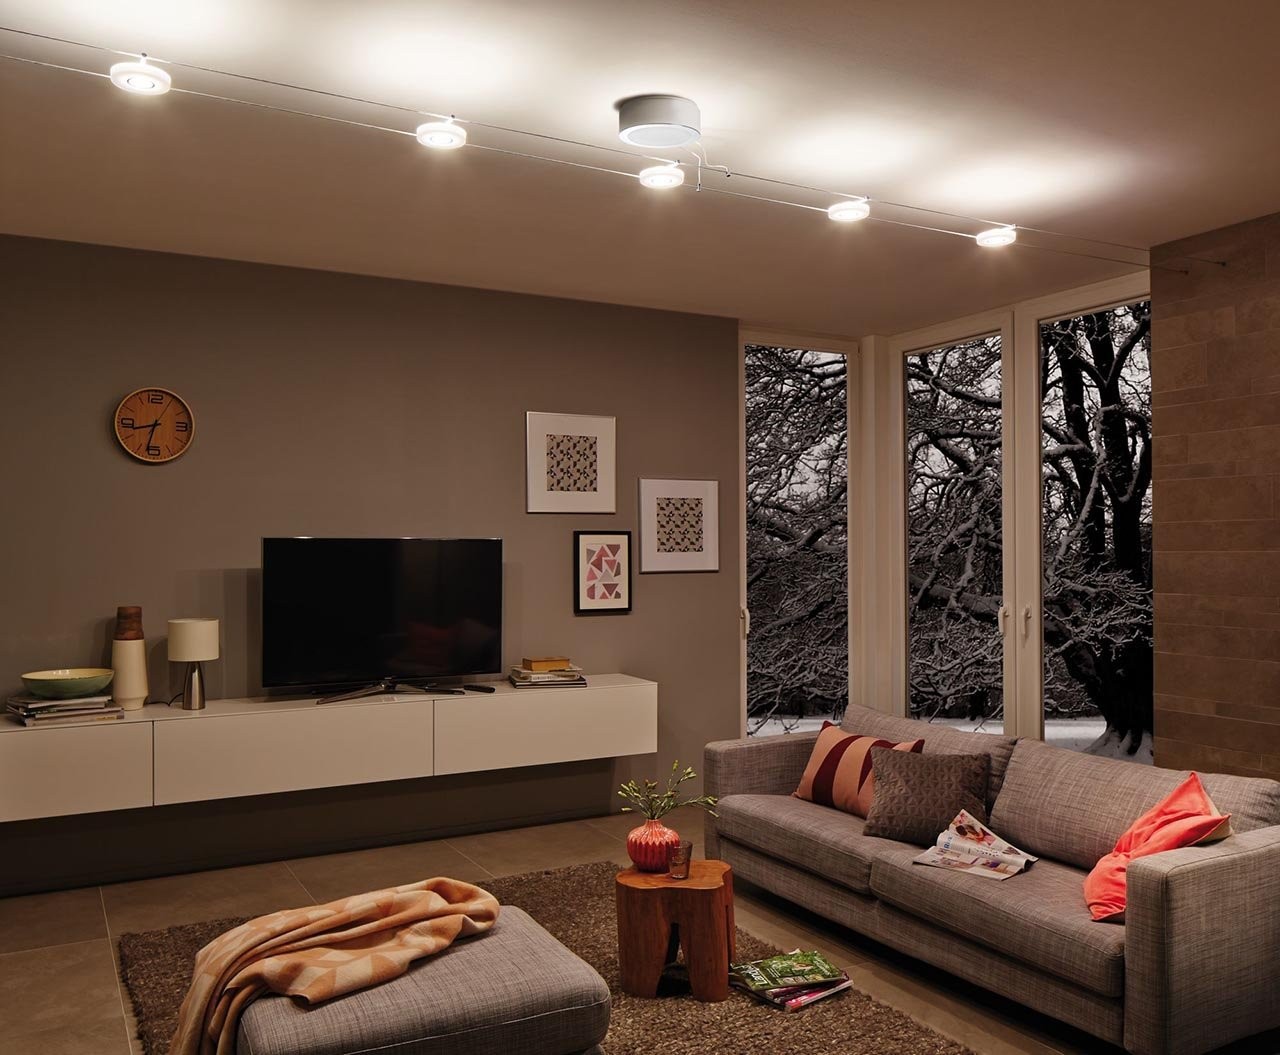 Освещение точечными светильниками - 5 причин не делать этого в своей квартире.